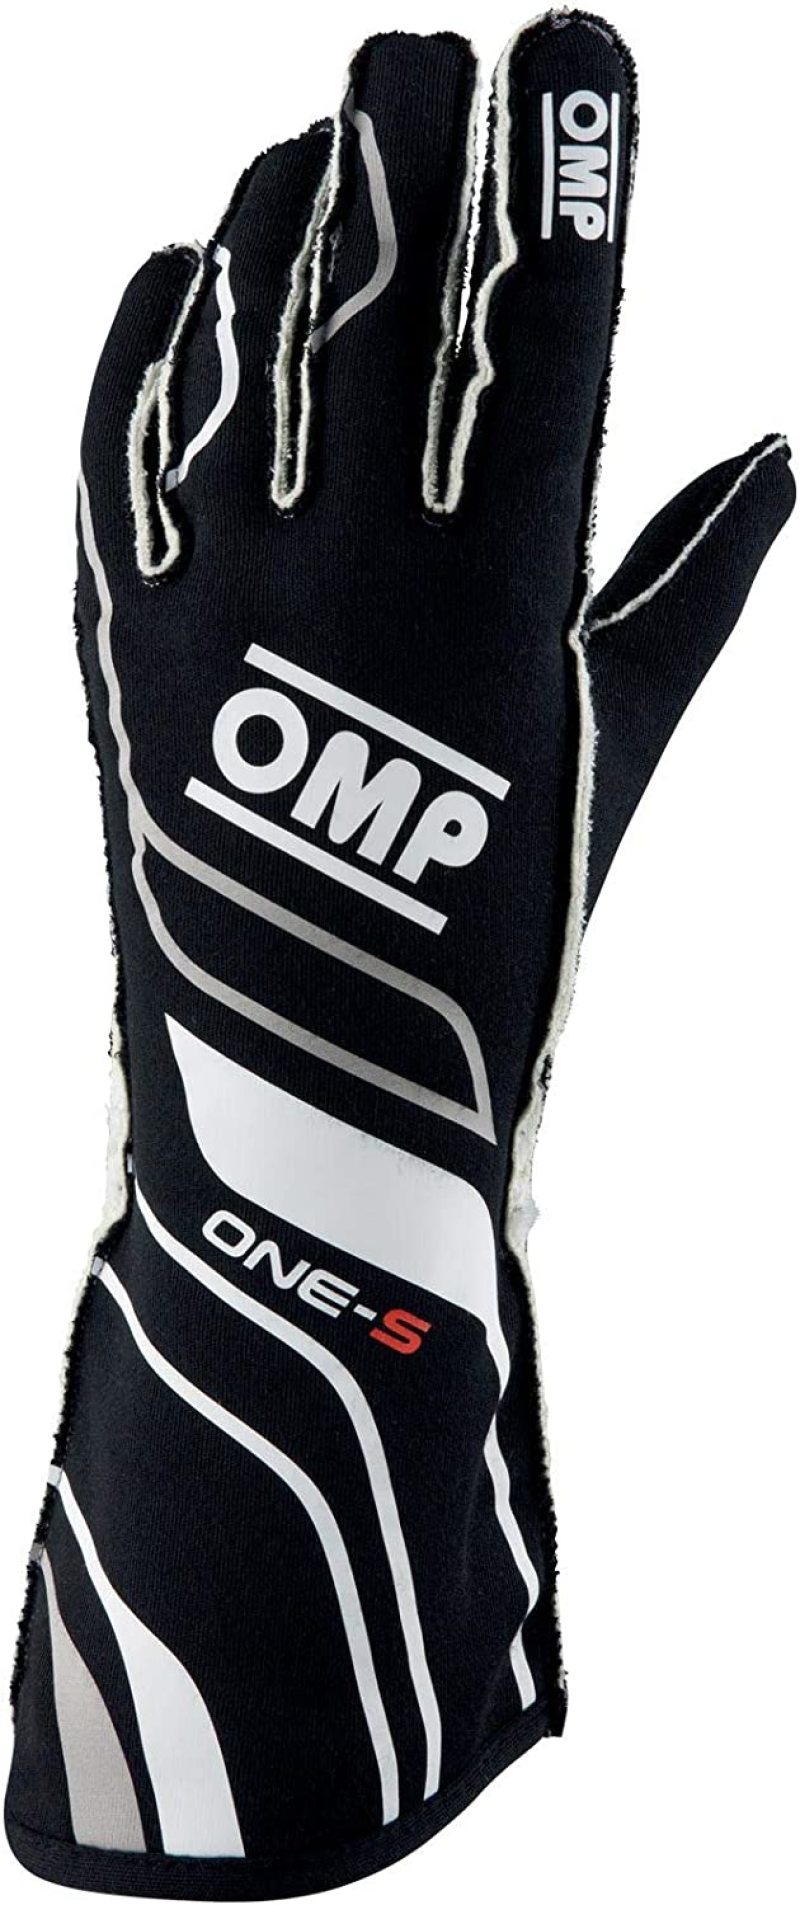 OMP One-S Gloves Black - Size L Fia 8556-2018 - IB0-0770-A01-071-L